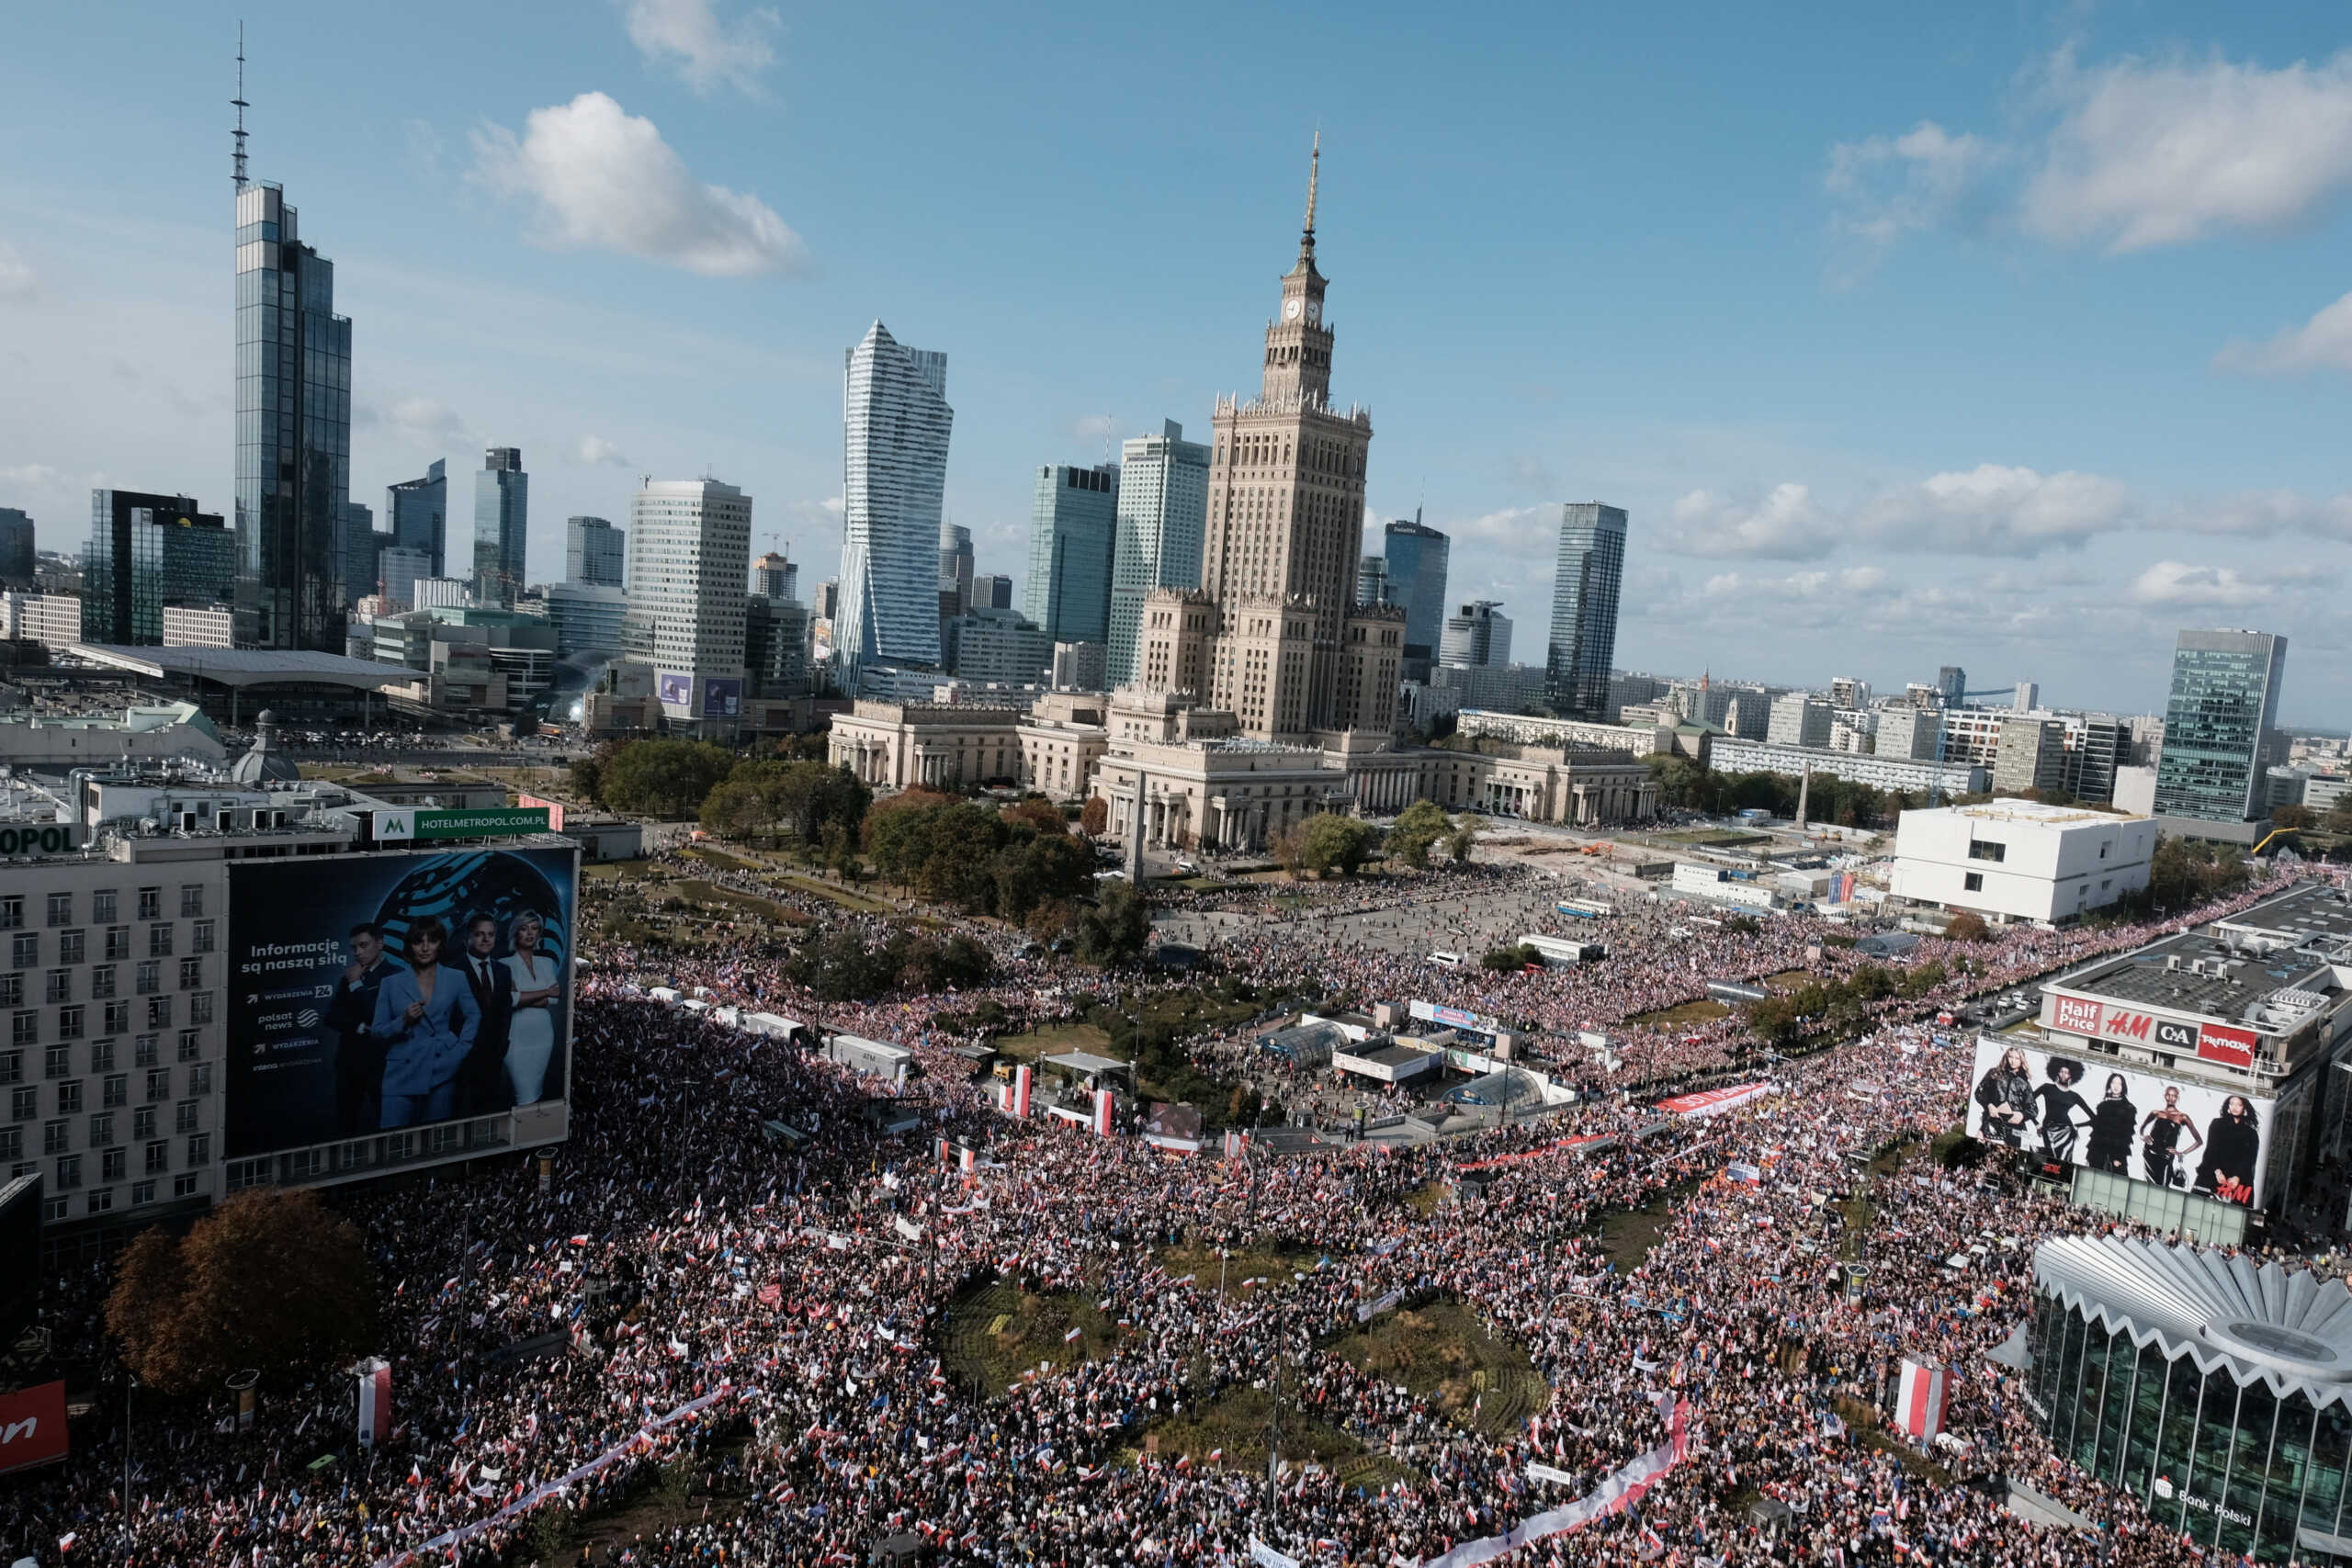 Πολωνία: Στους δρόμους της Βαρσοβίας ένα εκατομμύριο πολίτες στη διαδήλωση της φιλελεύθερης αντιπολίτευσης